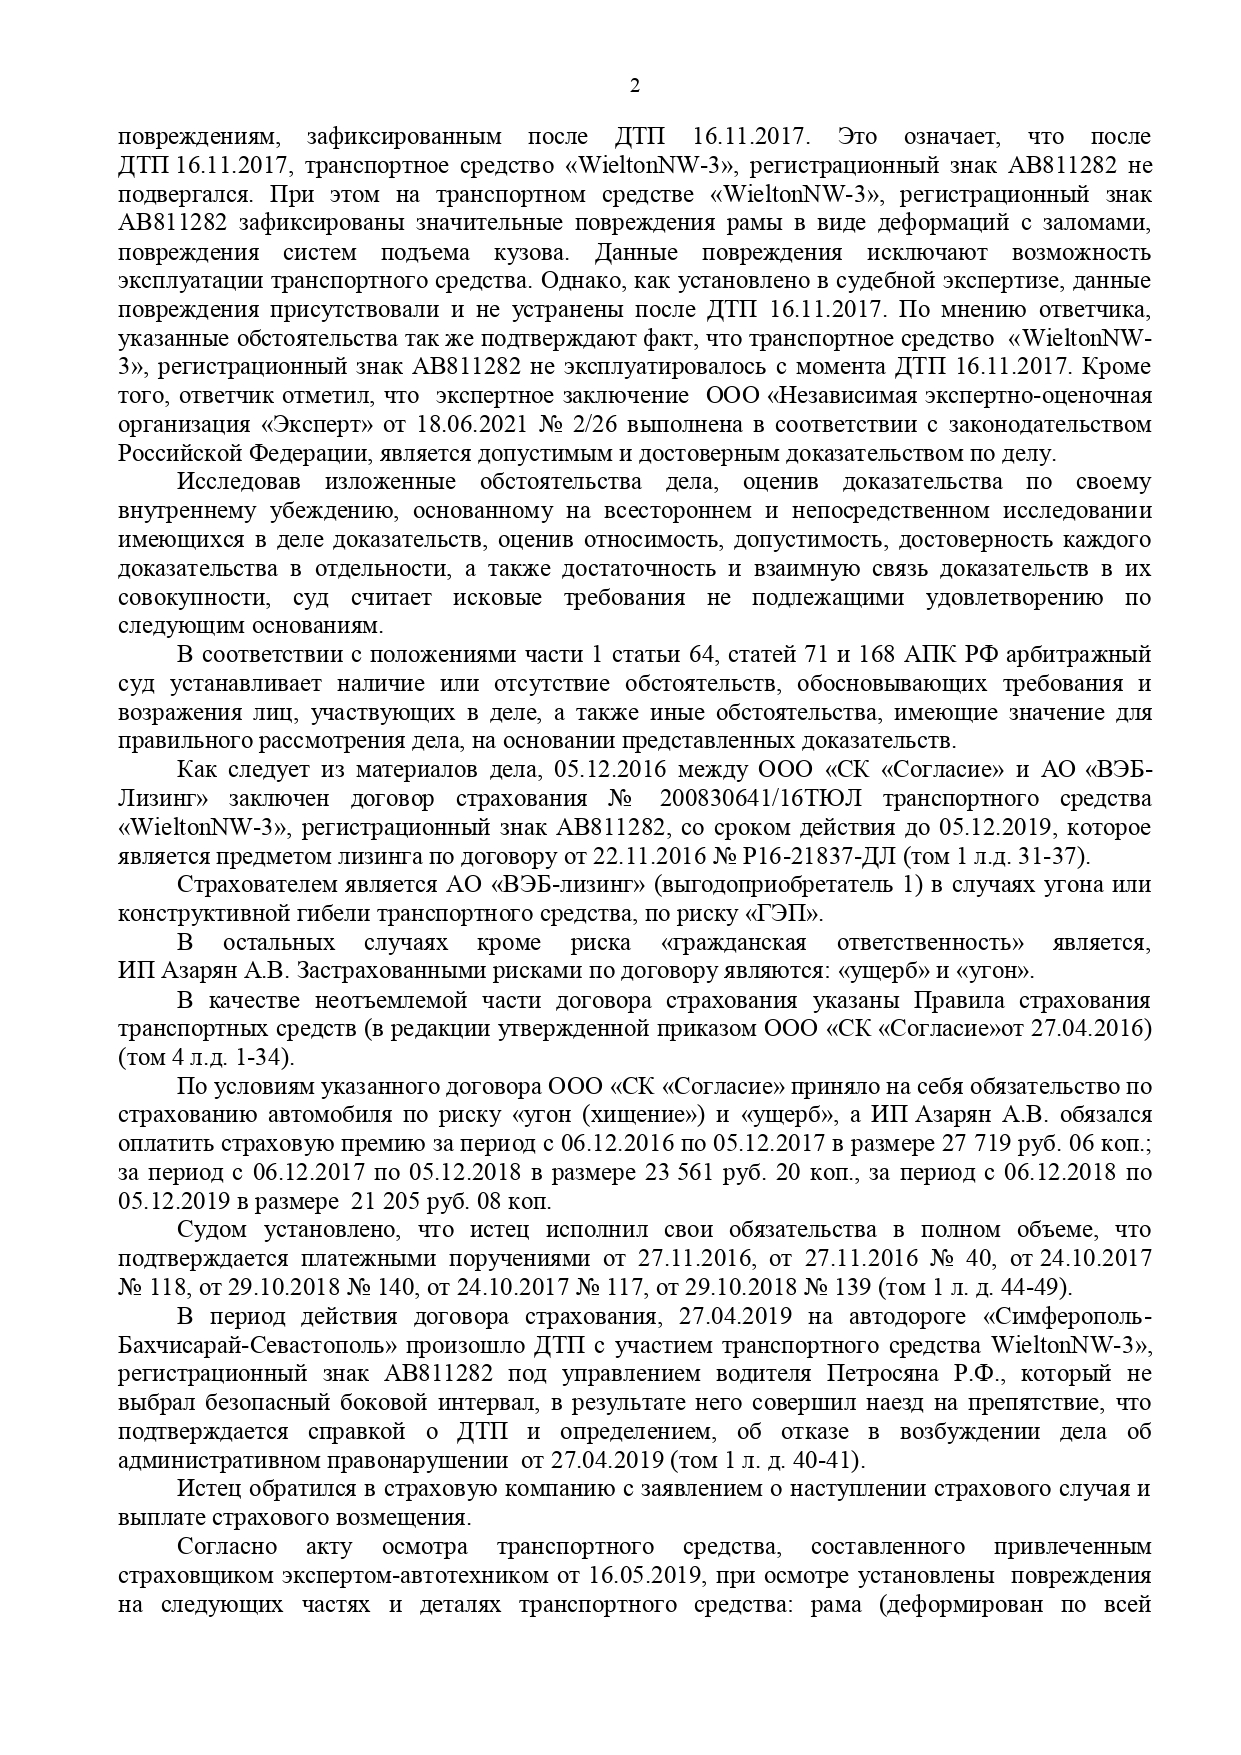 Арбитражный суд Ставропольского края вынес решение по делу №А63-14983/2020